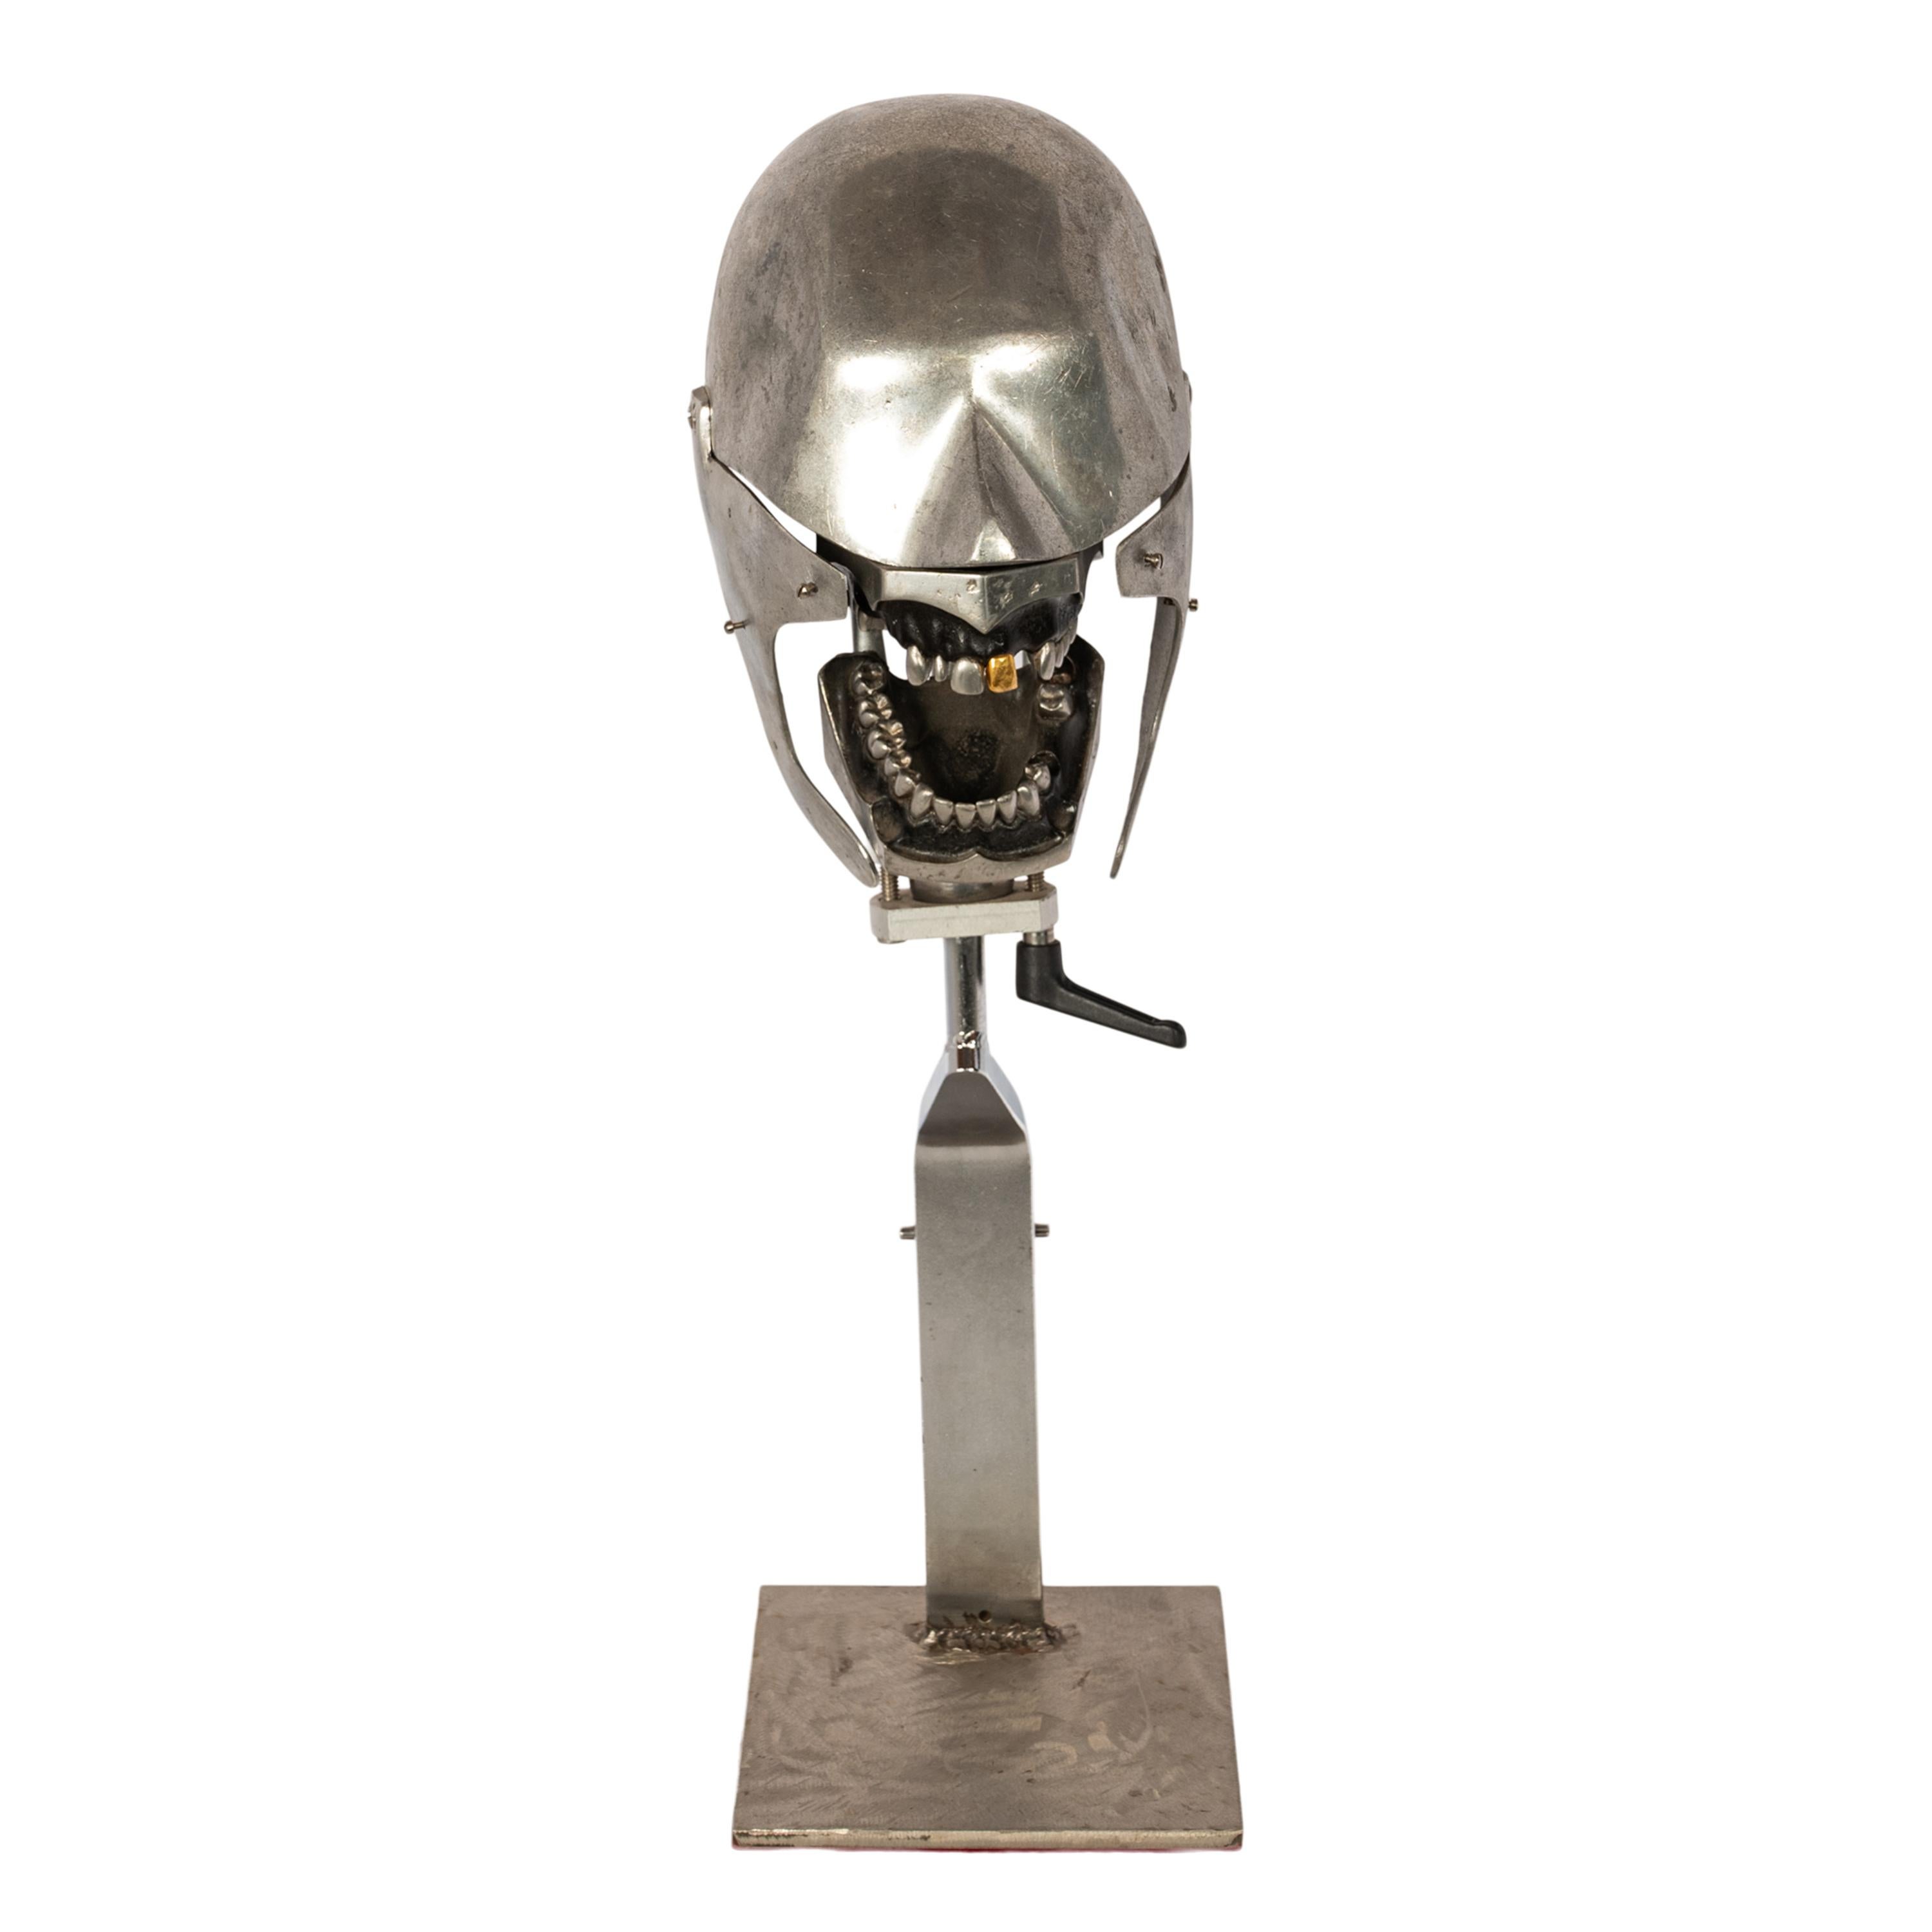 Antikes zahnärztliches Phantom-Lehrkopfmodell aus Aluminium mit Goldzahn, 1920er Jahre.
Eine wunderbare Spaß skulpturale Zahn Phantom, das Aluminium Kopf mit Unter-und Oberkiefer einer der oberen Schneidezähne ist Gold. Der Kopf kann mit einem